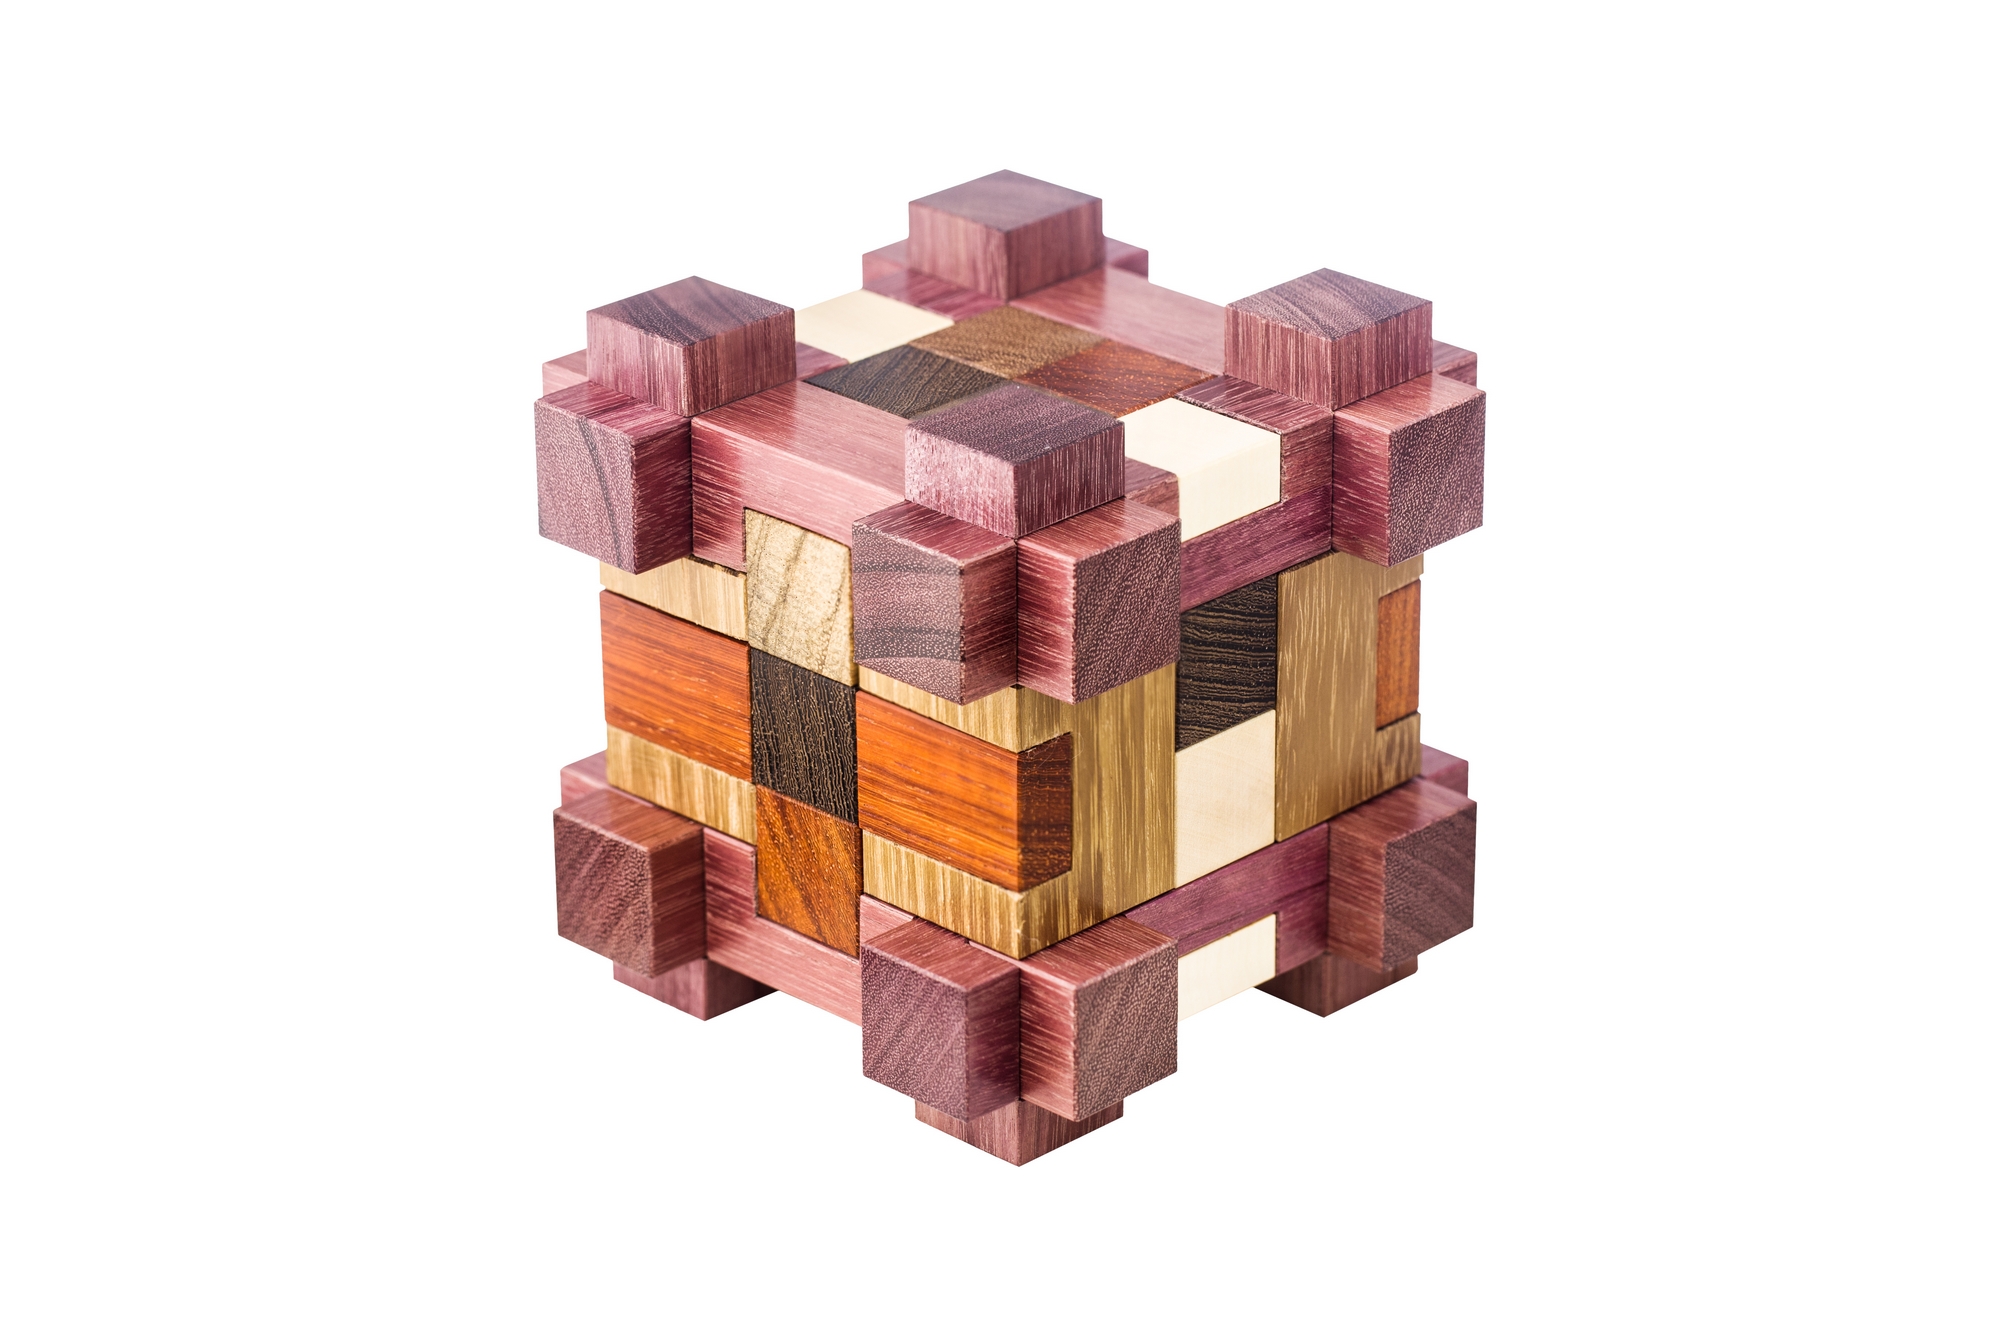 Imogen’s Cube